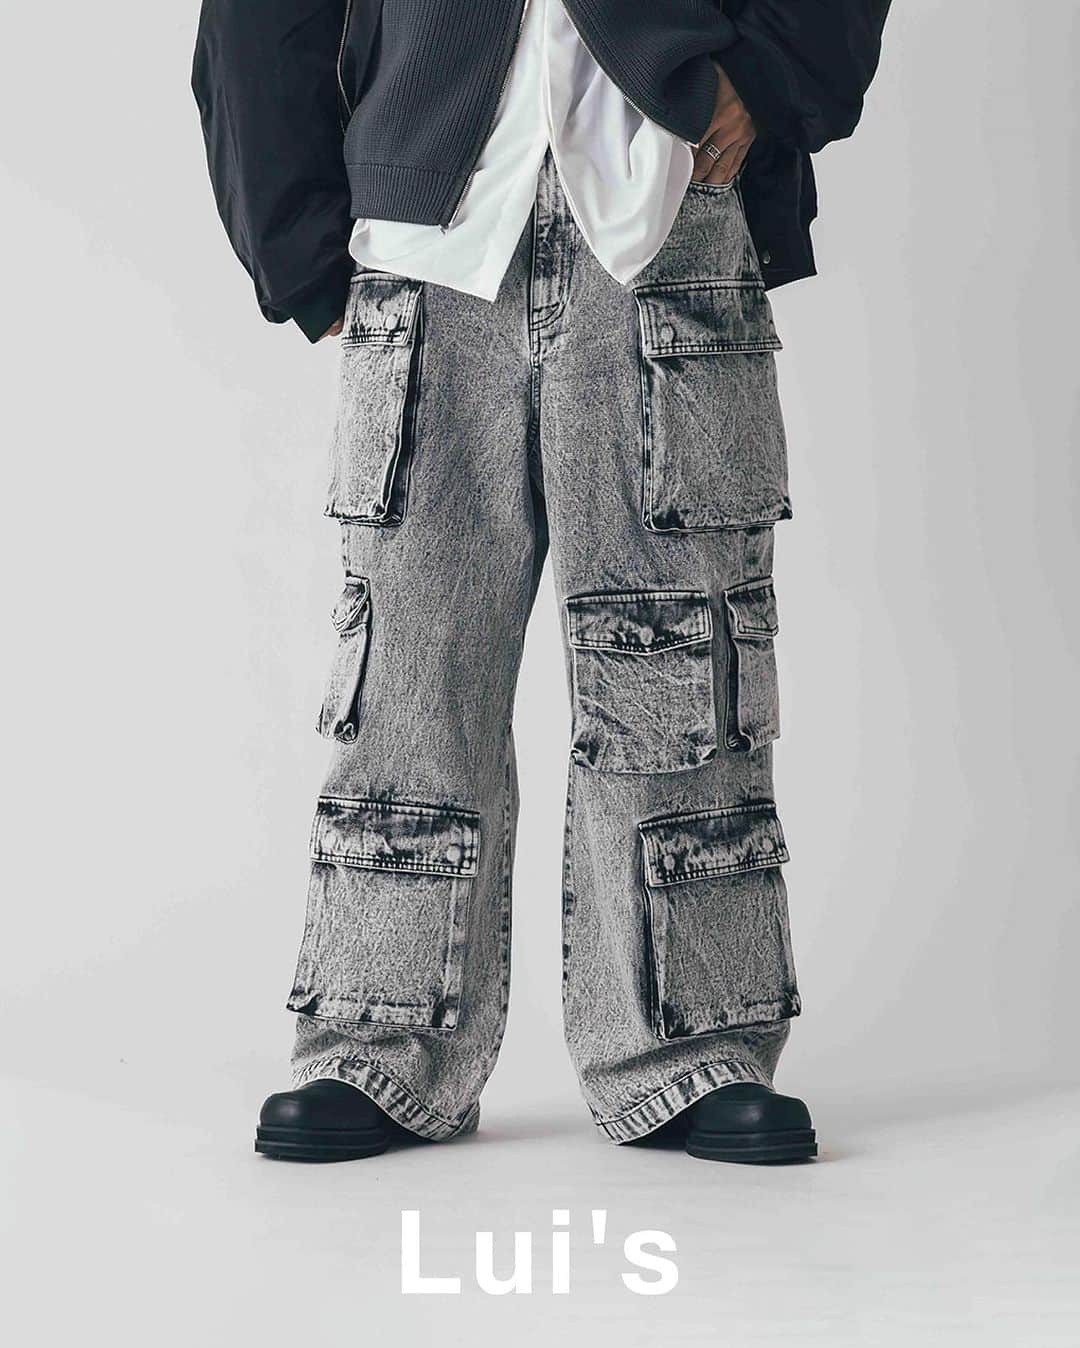 Lui's Lui's official instagramのインスタグラム：「□ Multi-pocket denim cargo pants  24SS の速くも人気商品をご紹介。  * マルチポケット デニムカーゴパンツ / ¥25,300 color：grey , black  【 POINT 】 ワイドデニムをベースに、カーゴポケットを配置したデニムパンツ。左右でポケットの数を変え、ユニークなデザインに。カーゴパンツをデニムパンツで表現した、ミリタリーとカジュアルが融合したアイテムです。  【 STYLING 】 今季は、ジャストサイズのトップスにカーゴパンツを組み合わせた、パンツのデザインが引き立つスタイルがオススメです。 また、今季はパーカーにフライトジャケットを組み合わせた、カジュアルなスタイルもオススメ。  【 推奨サイズ 】 Sサイズ（30） 身長：～１７４ｃｍ Ｍサイズ（32） 身長：１７５ｃｍ～ Lサイズ（34）身長：１７９ｃｍ～  #メンズファッション #メンズコーデ #カーゴパンツ #カーゴパンツコーデ #ブラックコーデ #モード系ファッション #デニムコーデ #デニムパンツ #ミリタリー #ミリタリーコーデ   💬 Which color is your favorite?」